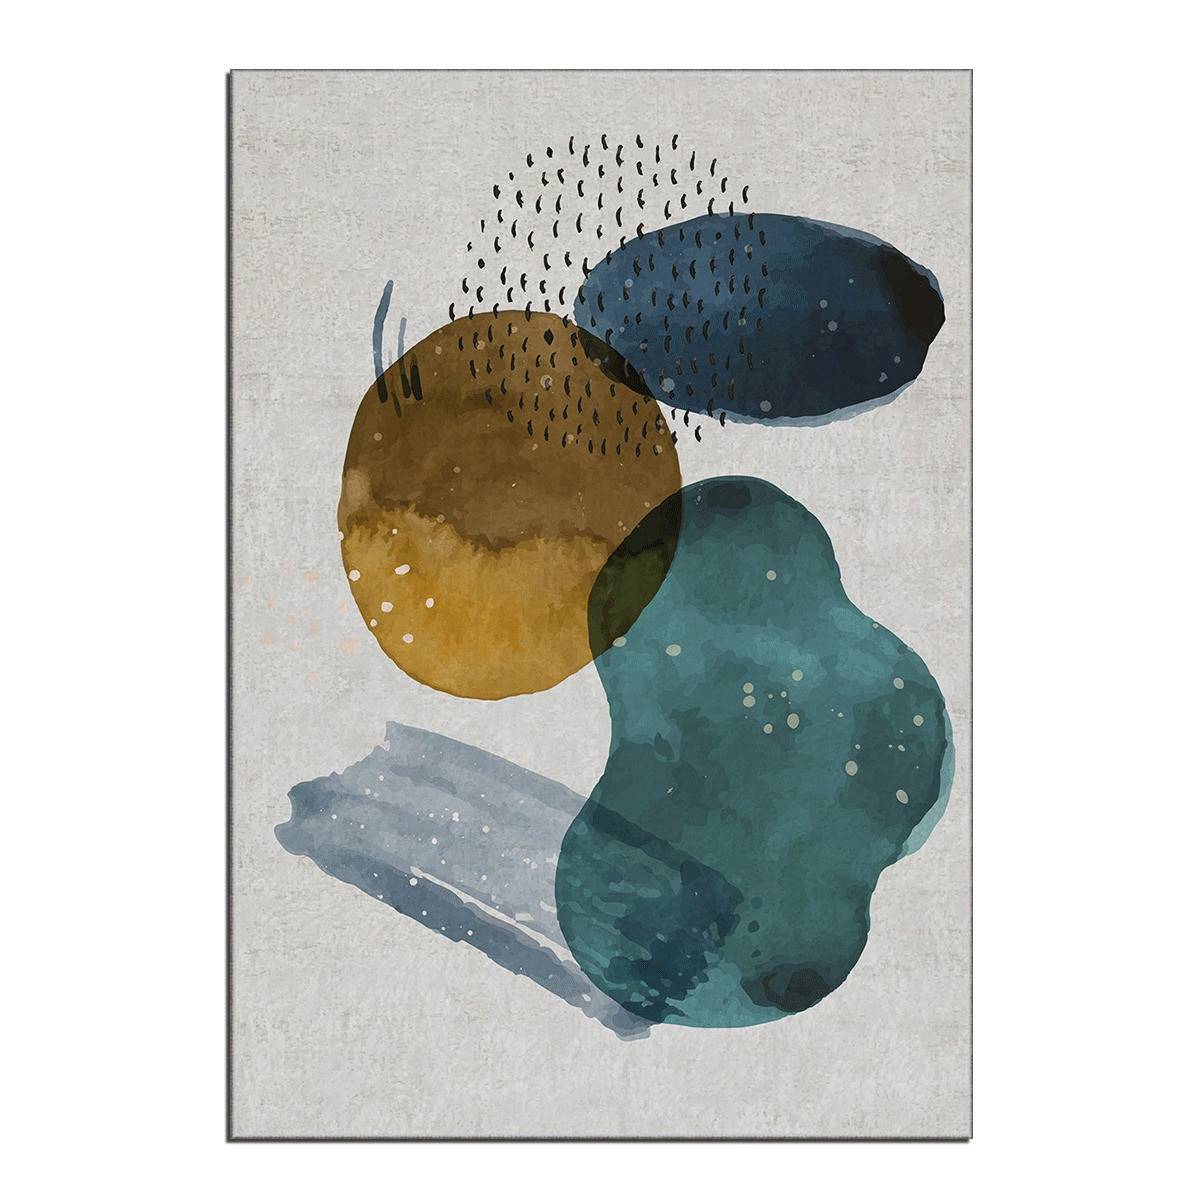 Eben Teppich 100x140cm Abstraktes Muster Flecken Gelb, Blau und Grün